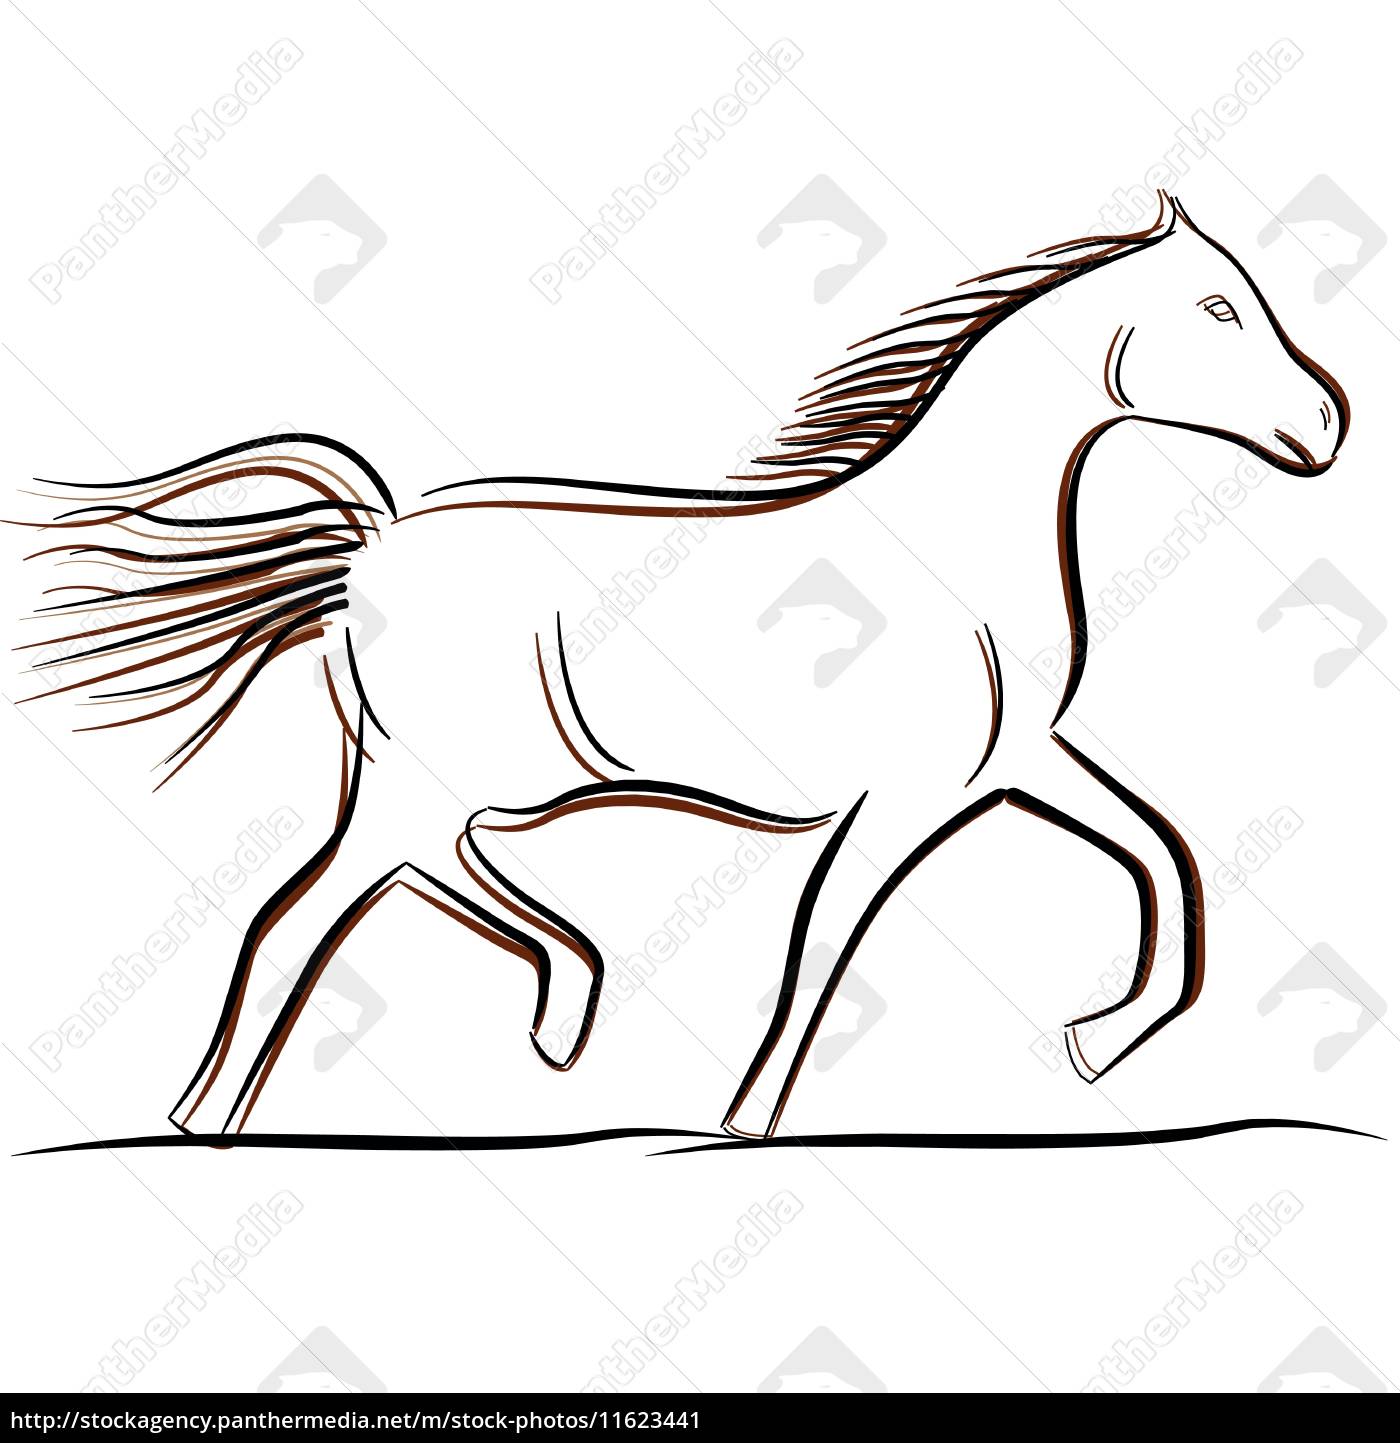 Página 2, Vetores e ilustrações de Banco cavalos para download gratuito